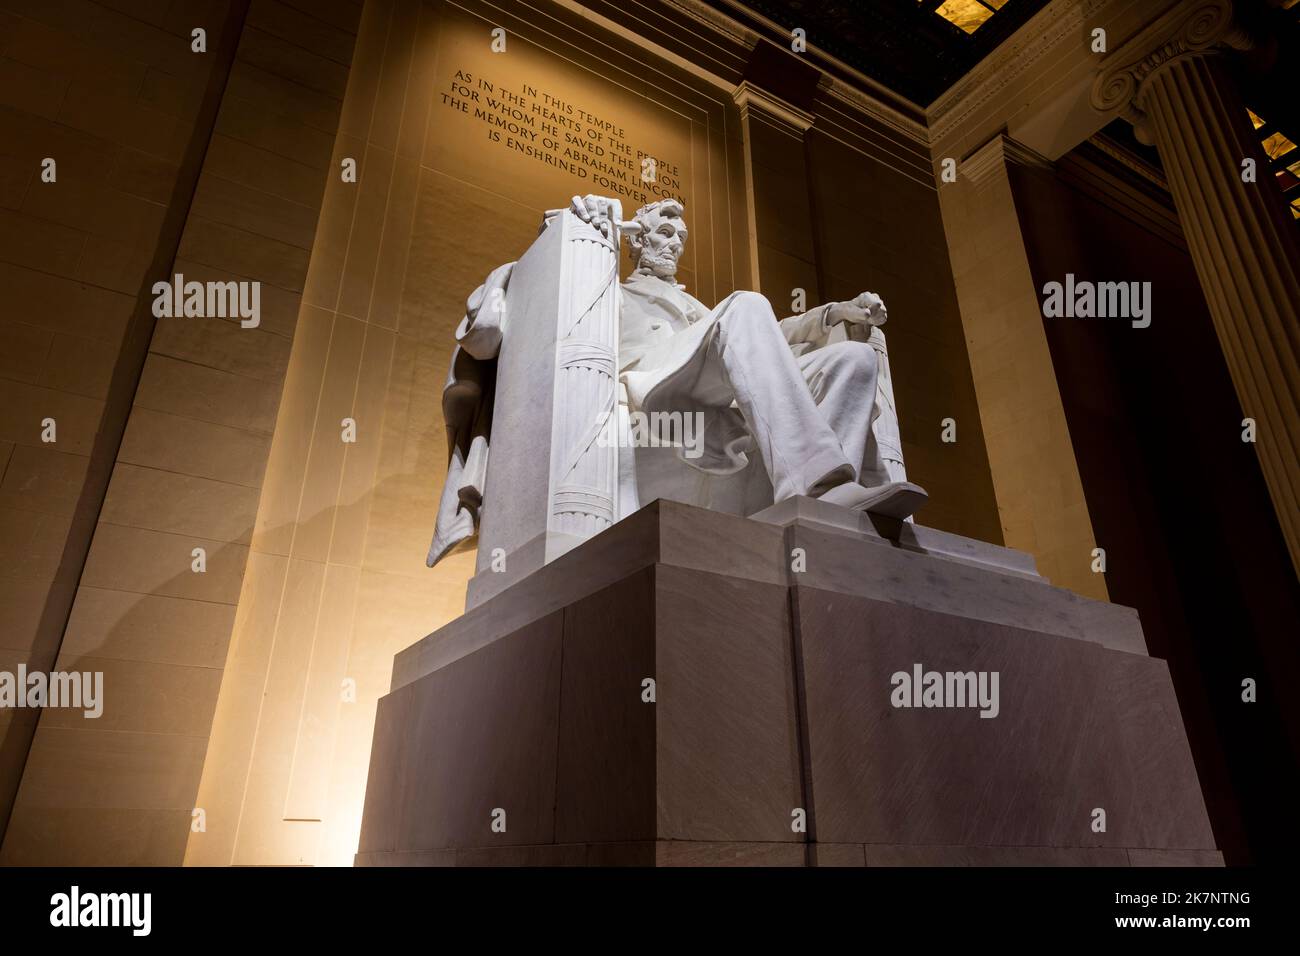 La estatua de Abraham Lincoln, esculpida por Daniel Chester French y tallada por los Piccirilli Brothers, dentro del Lincoln Memorial en Washington, D.C. Foto de stock